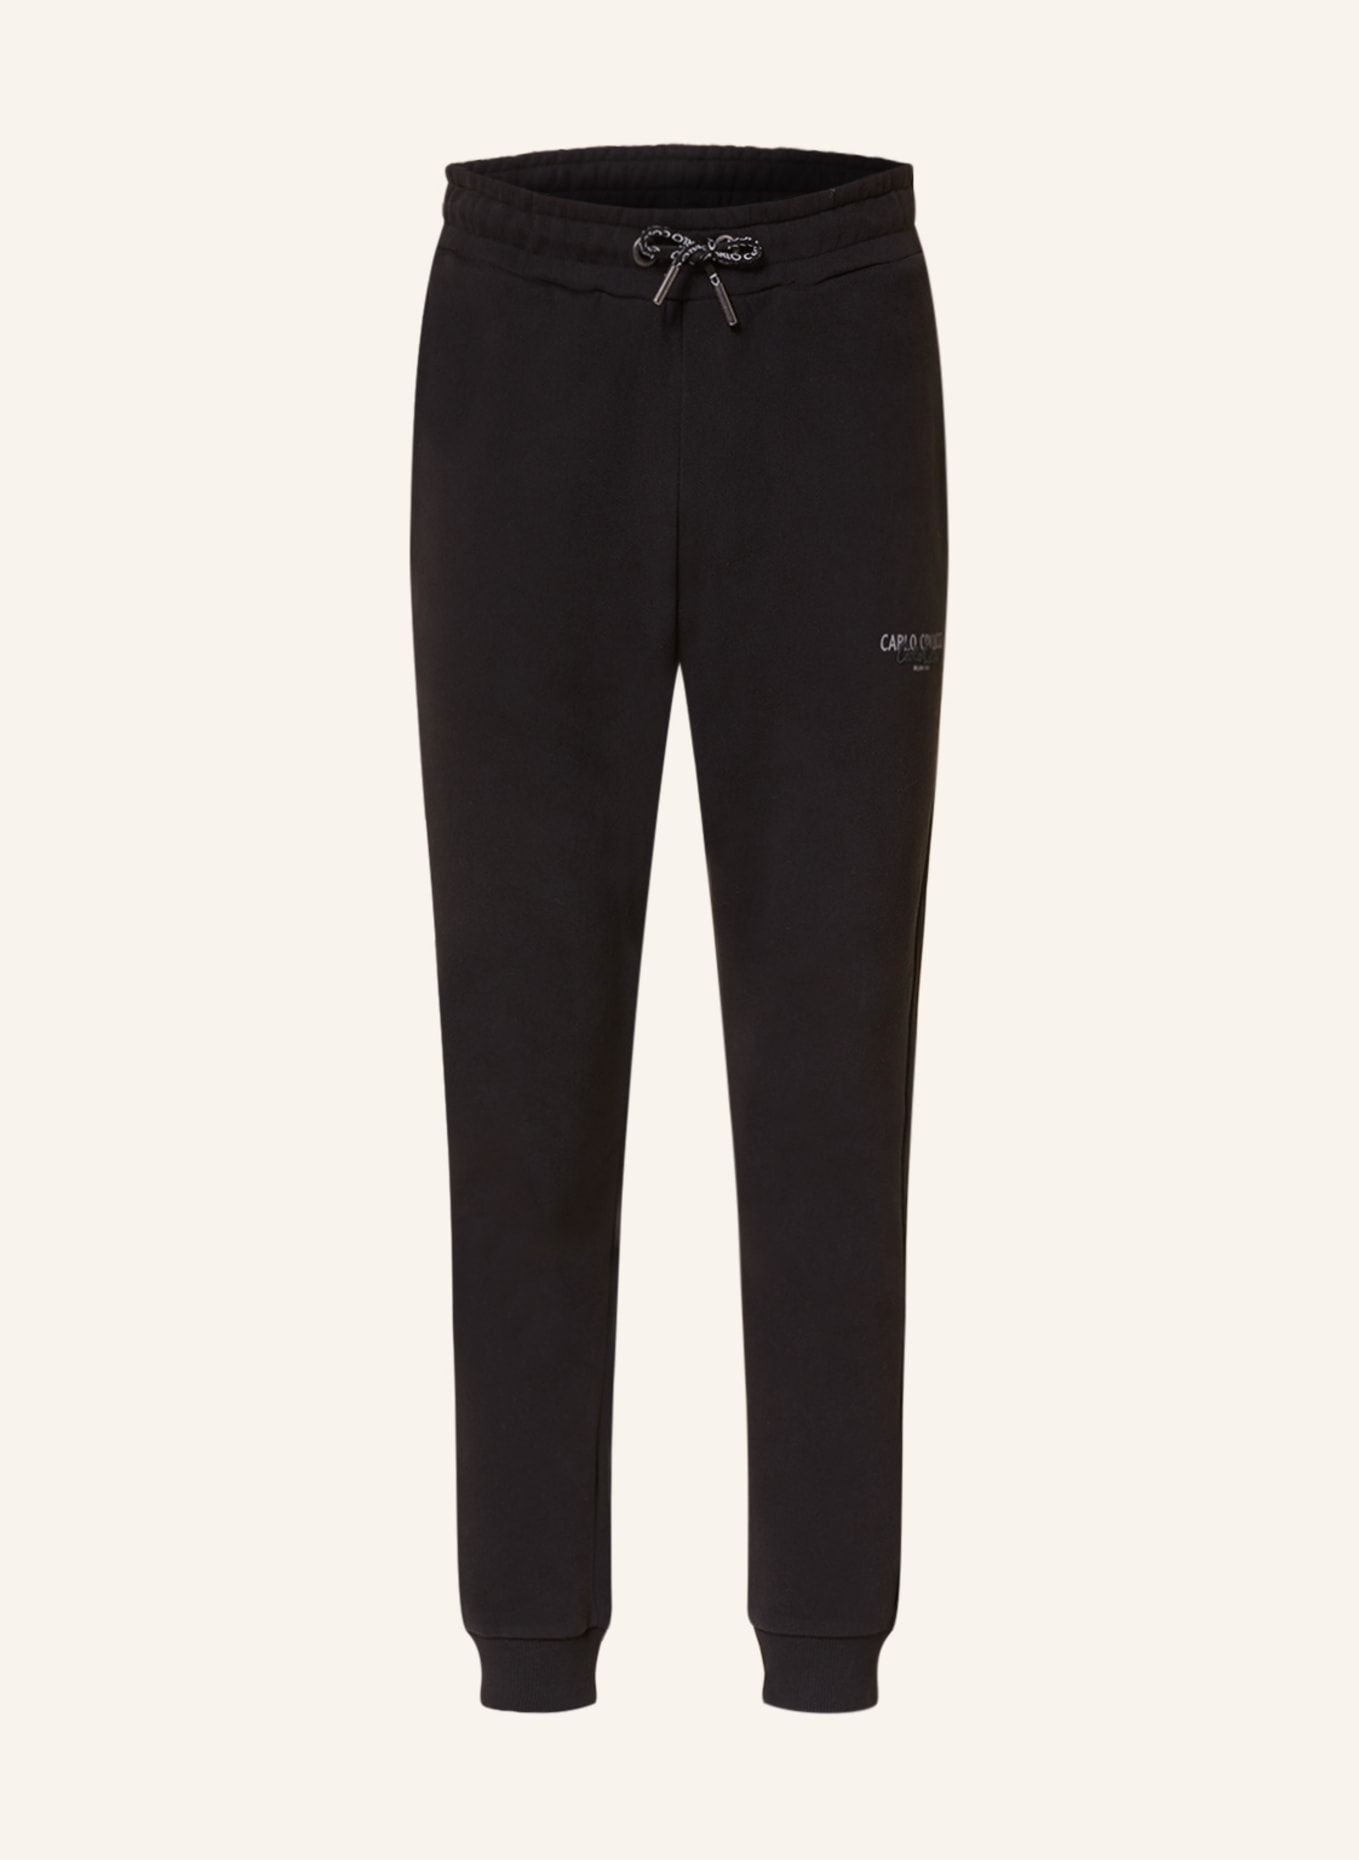 CARLO COLUCCI Sweatpants, Color: BLACK (Image 1)